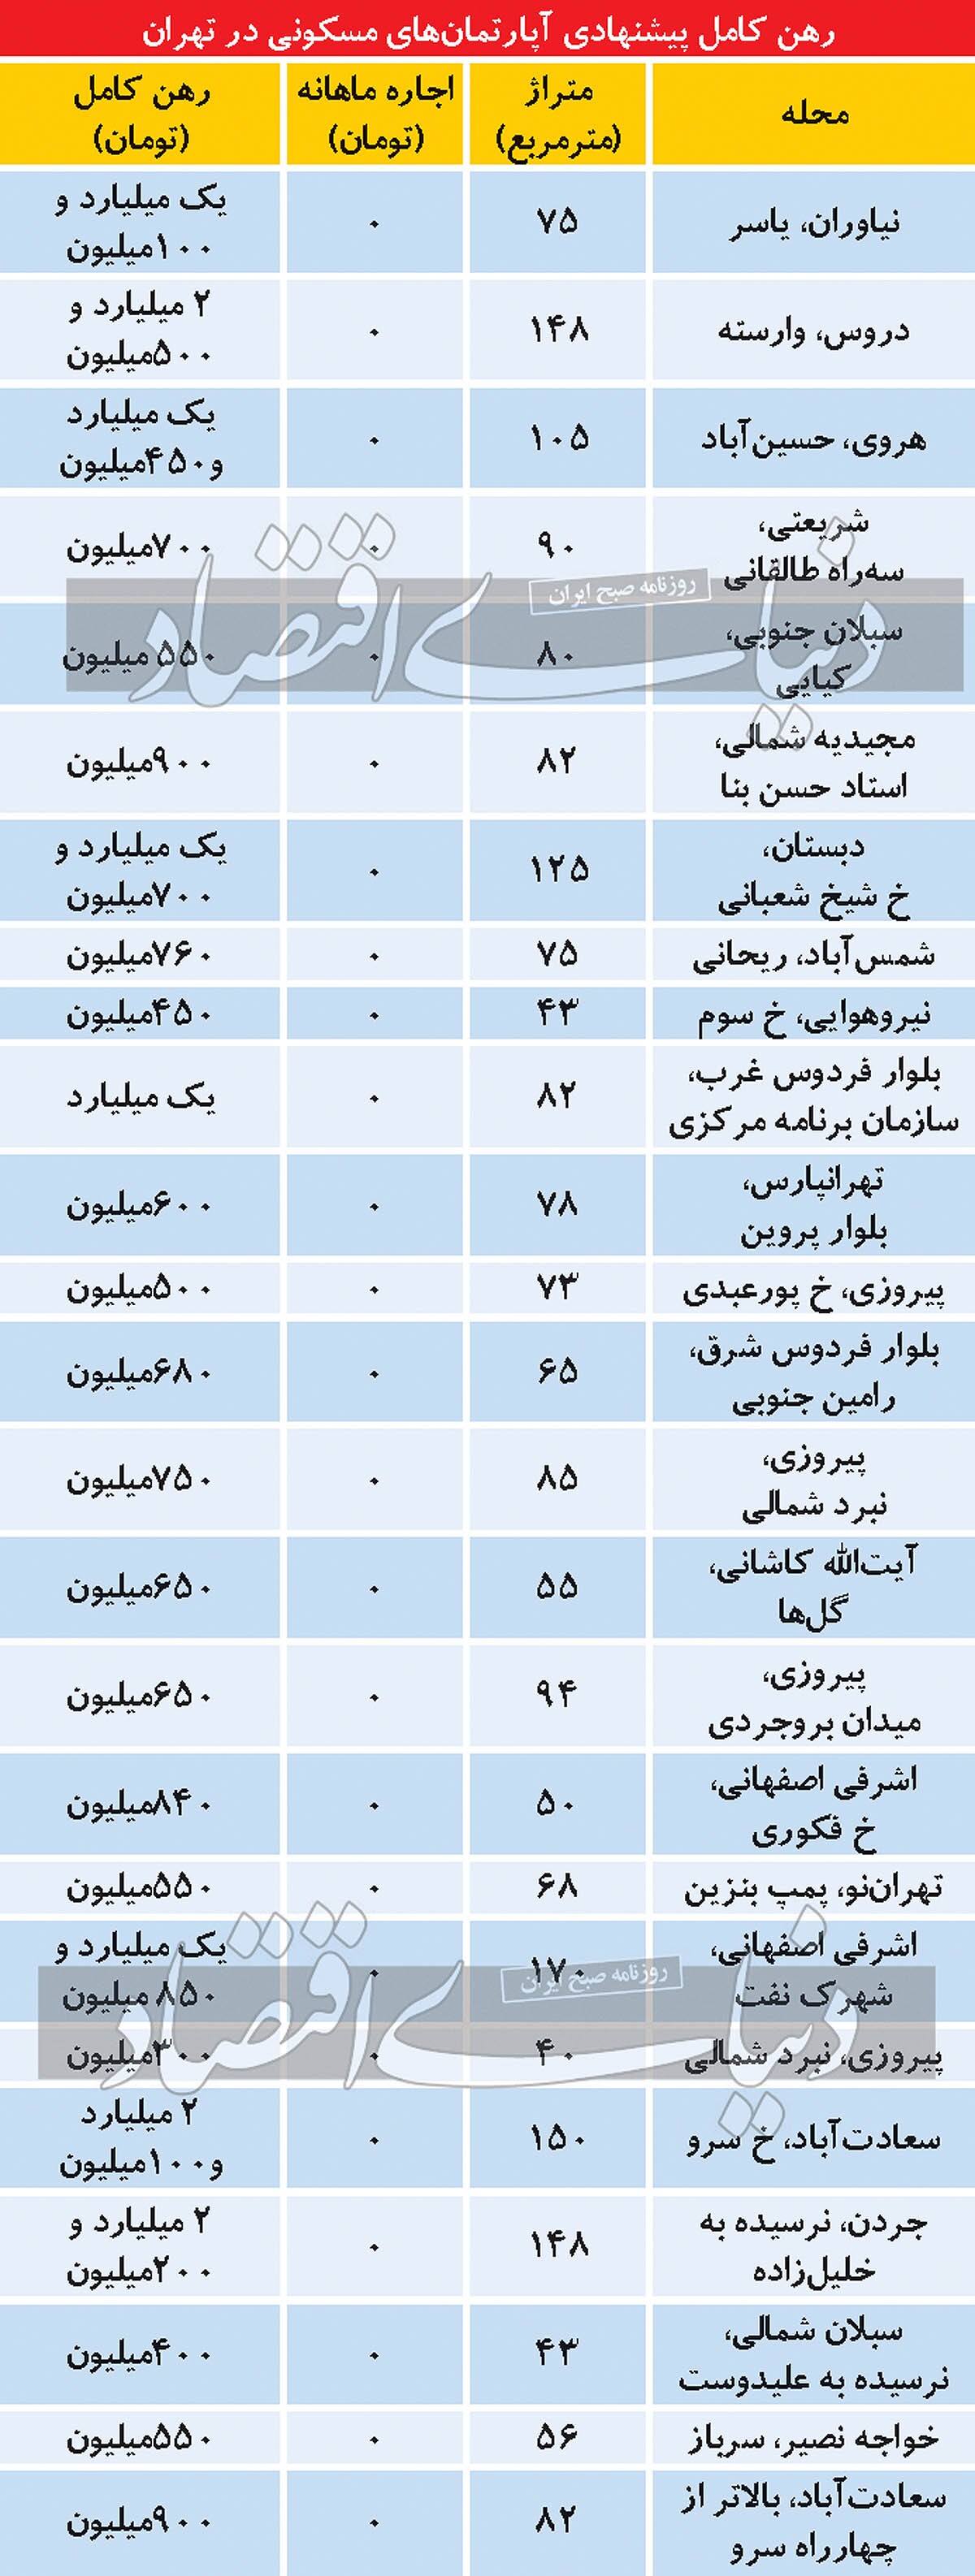 رهن کامل پیشنهادی آپارتمان های مسکونی در تهران/ جدول